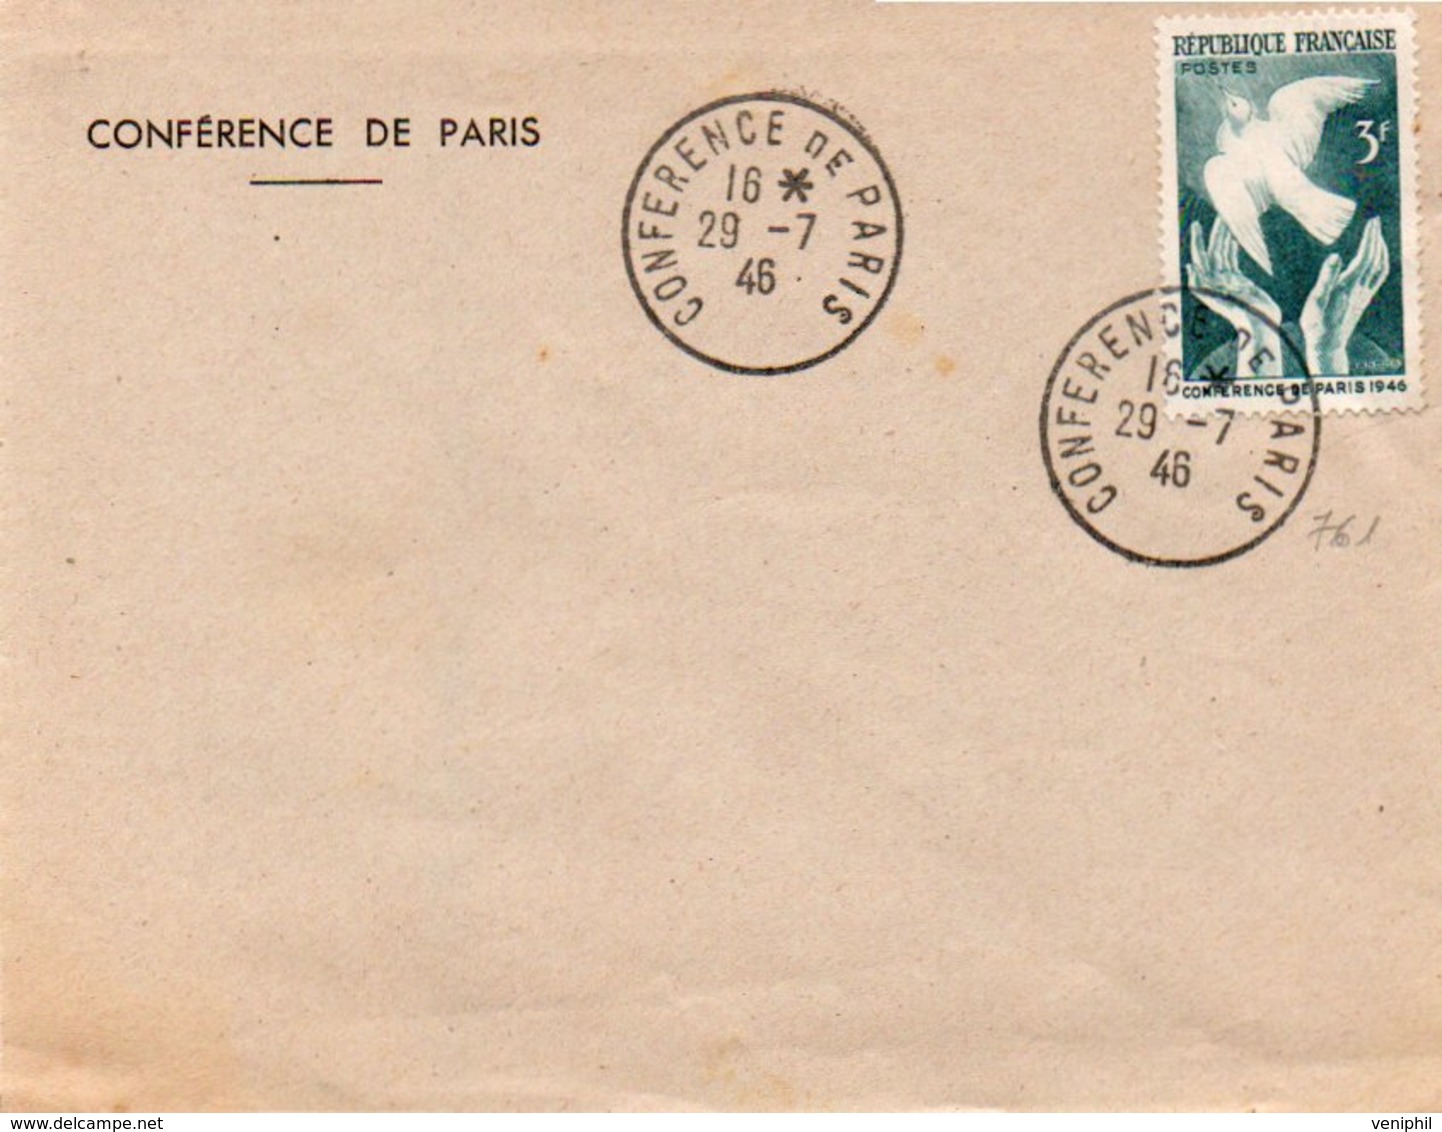 LETTRE AFFRANCHIE N° 761 CONFERENCE DE PARIS 1946 AVEC CAD CONCORDANT - TB - Commemorative Postmarks